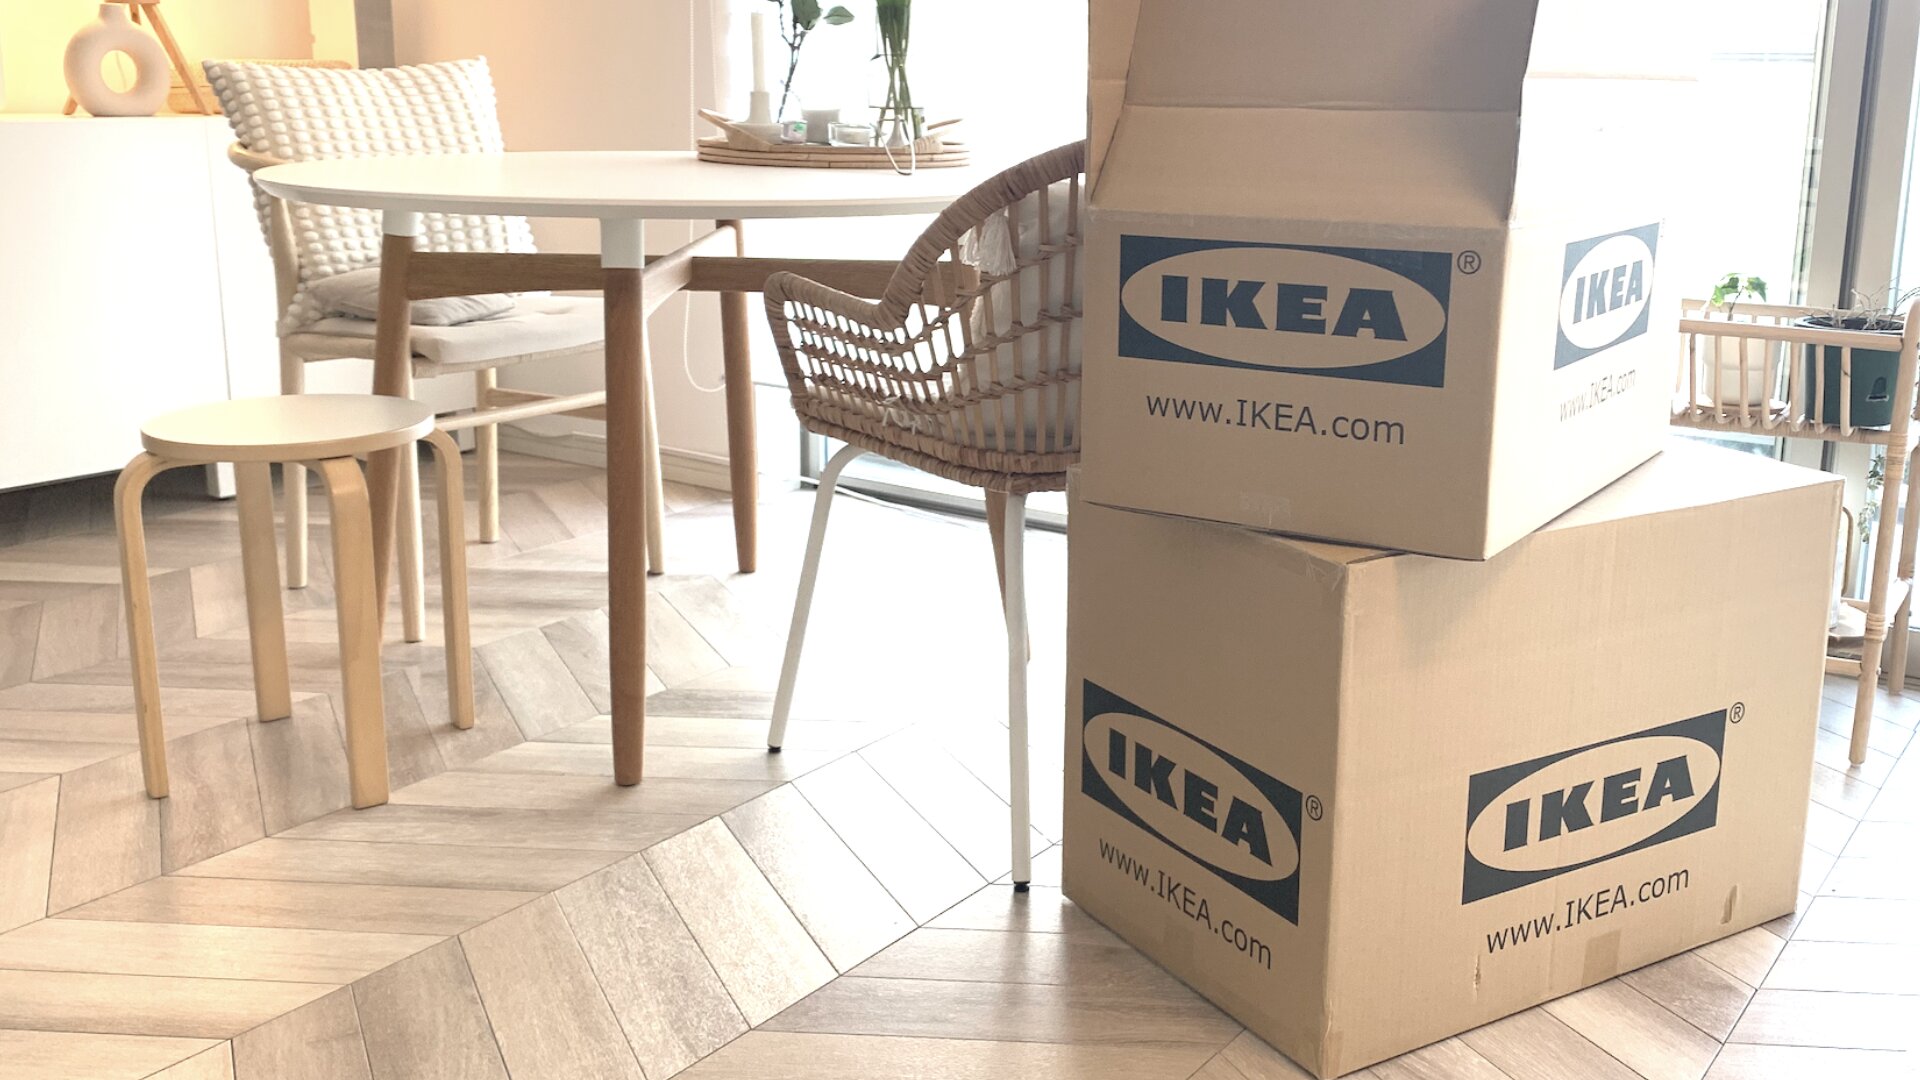 IKEAオンラインショッピングは他社と違う独特なところがあります